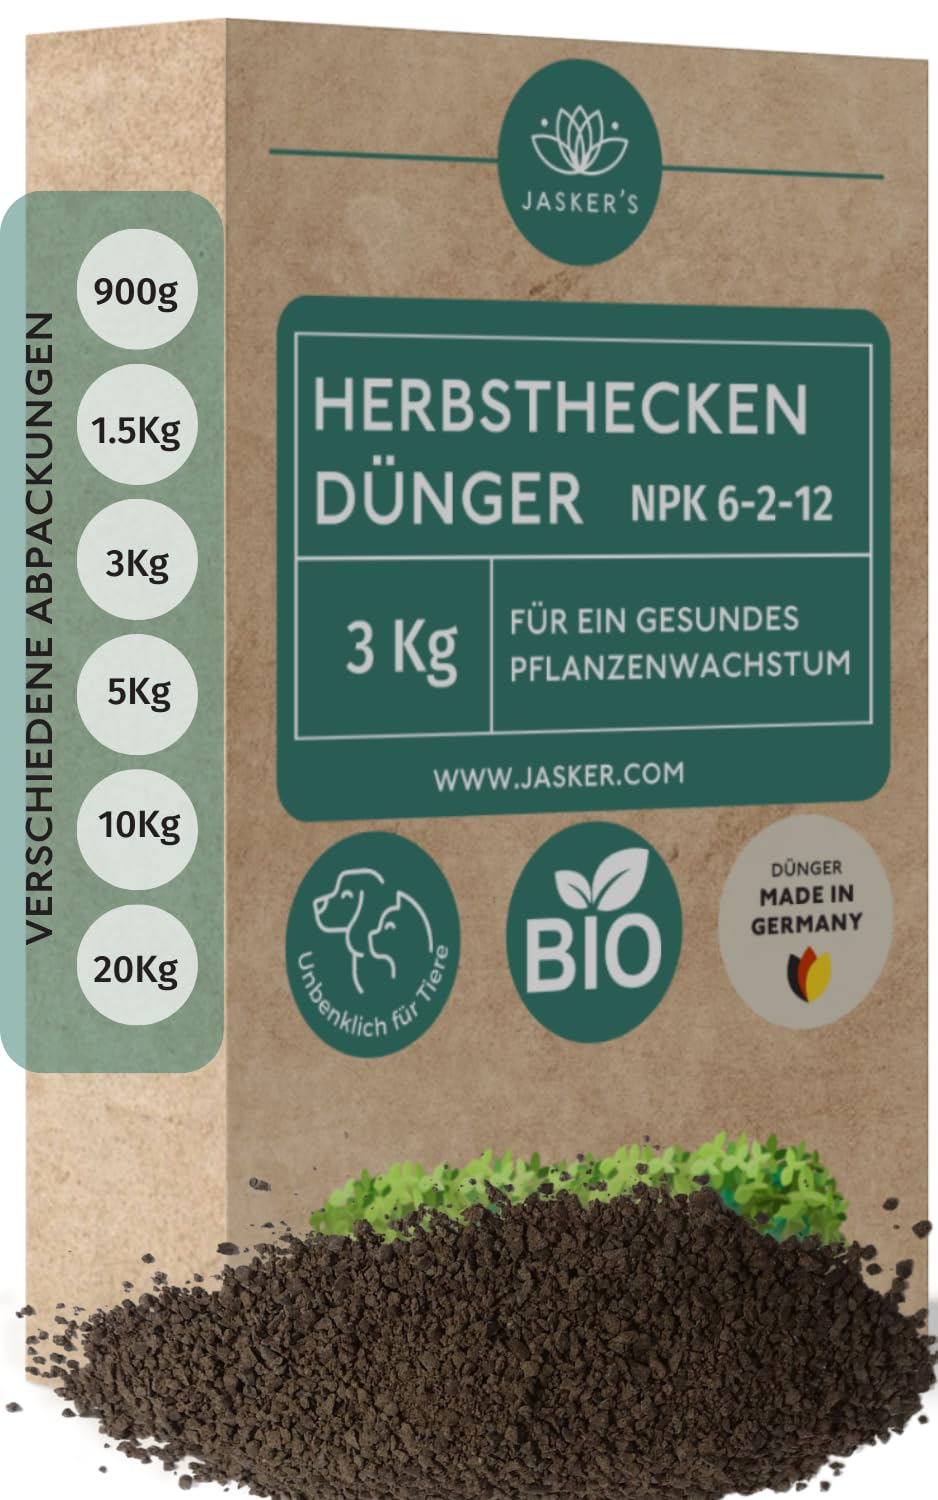 Bio Heckendünger 3 Kg - 100% Tierfreundlicher Pflanzendünger - Ideal als Dünger für Buchsbaum, Nadelbäume, Thuja Hecken - Viel Kalium & Magnesium für frischgrüne Blätter